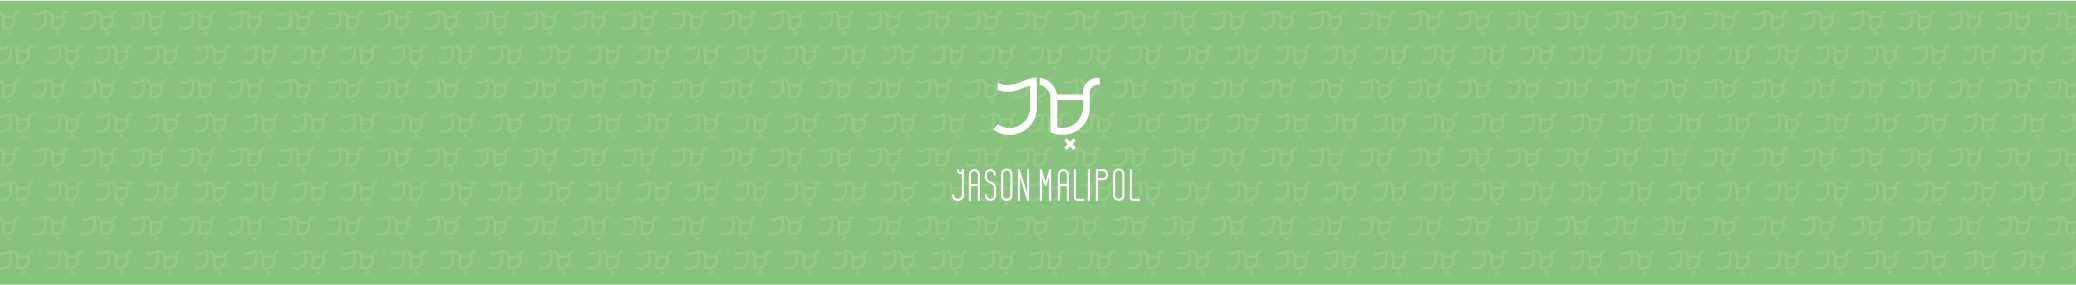 Jason Malipol's profile banner